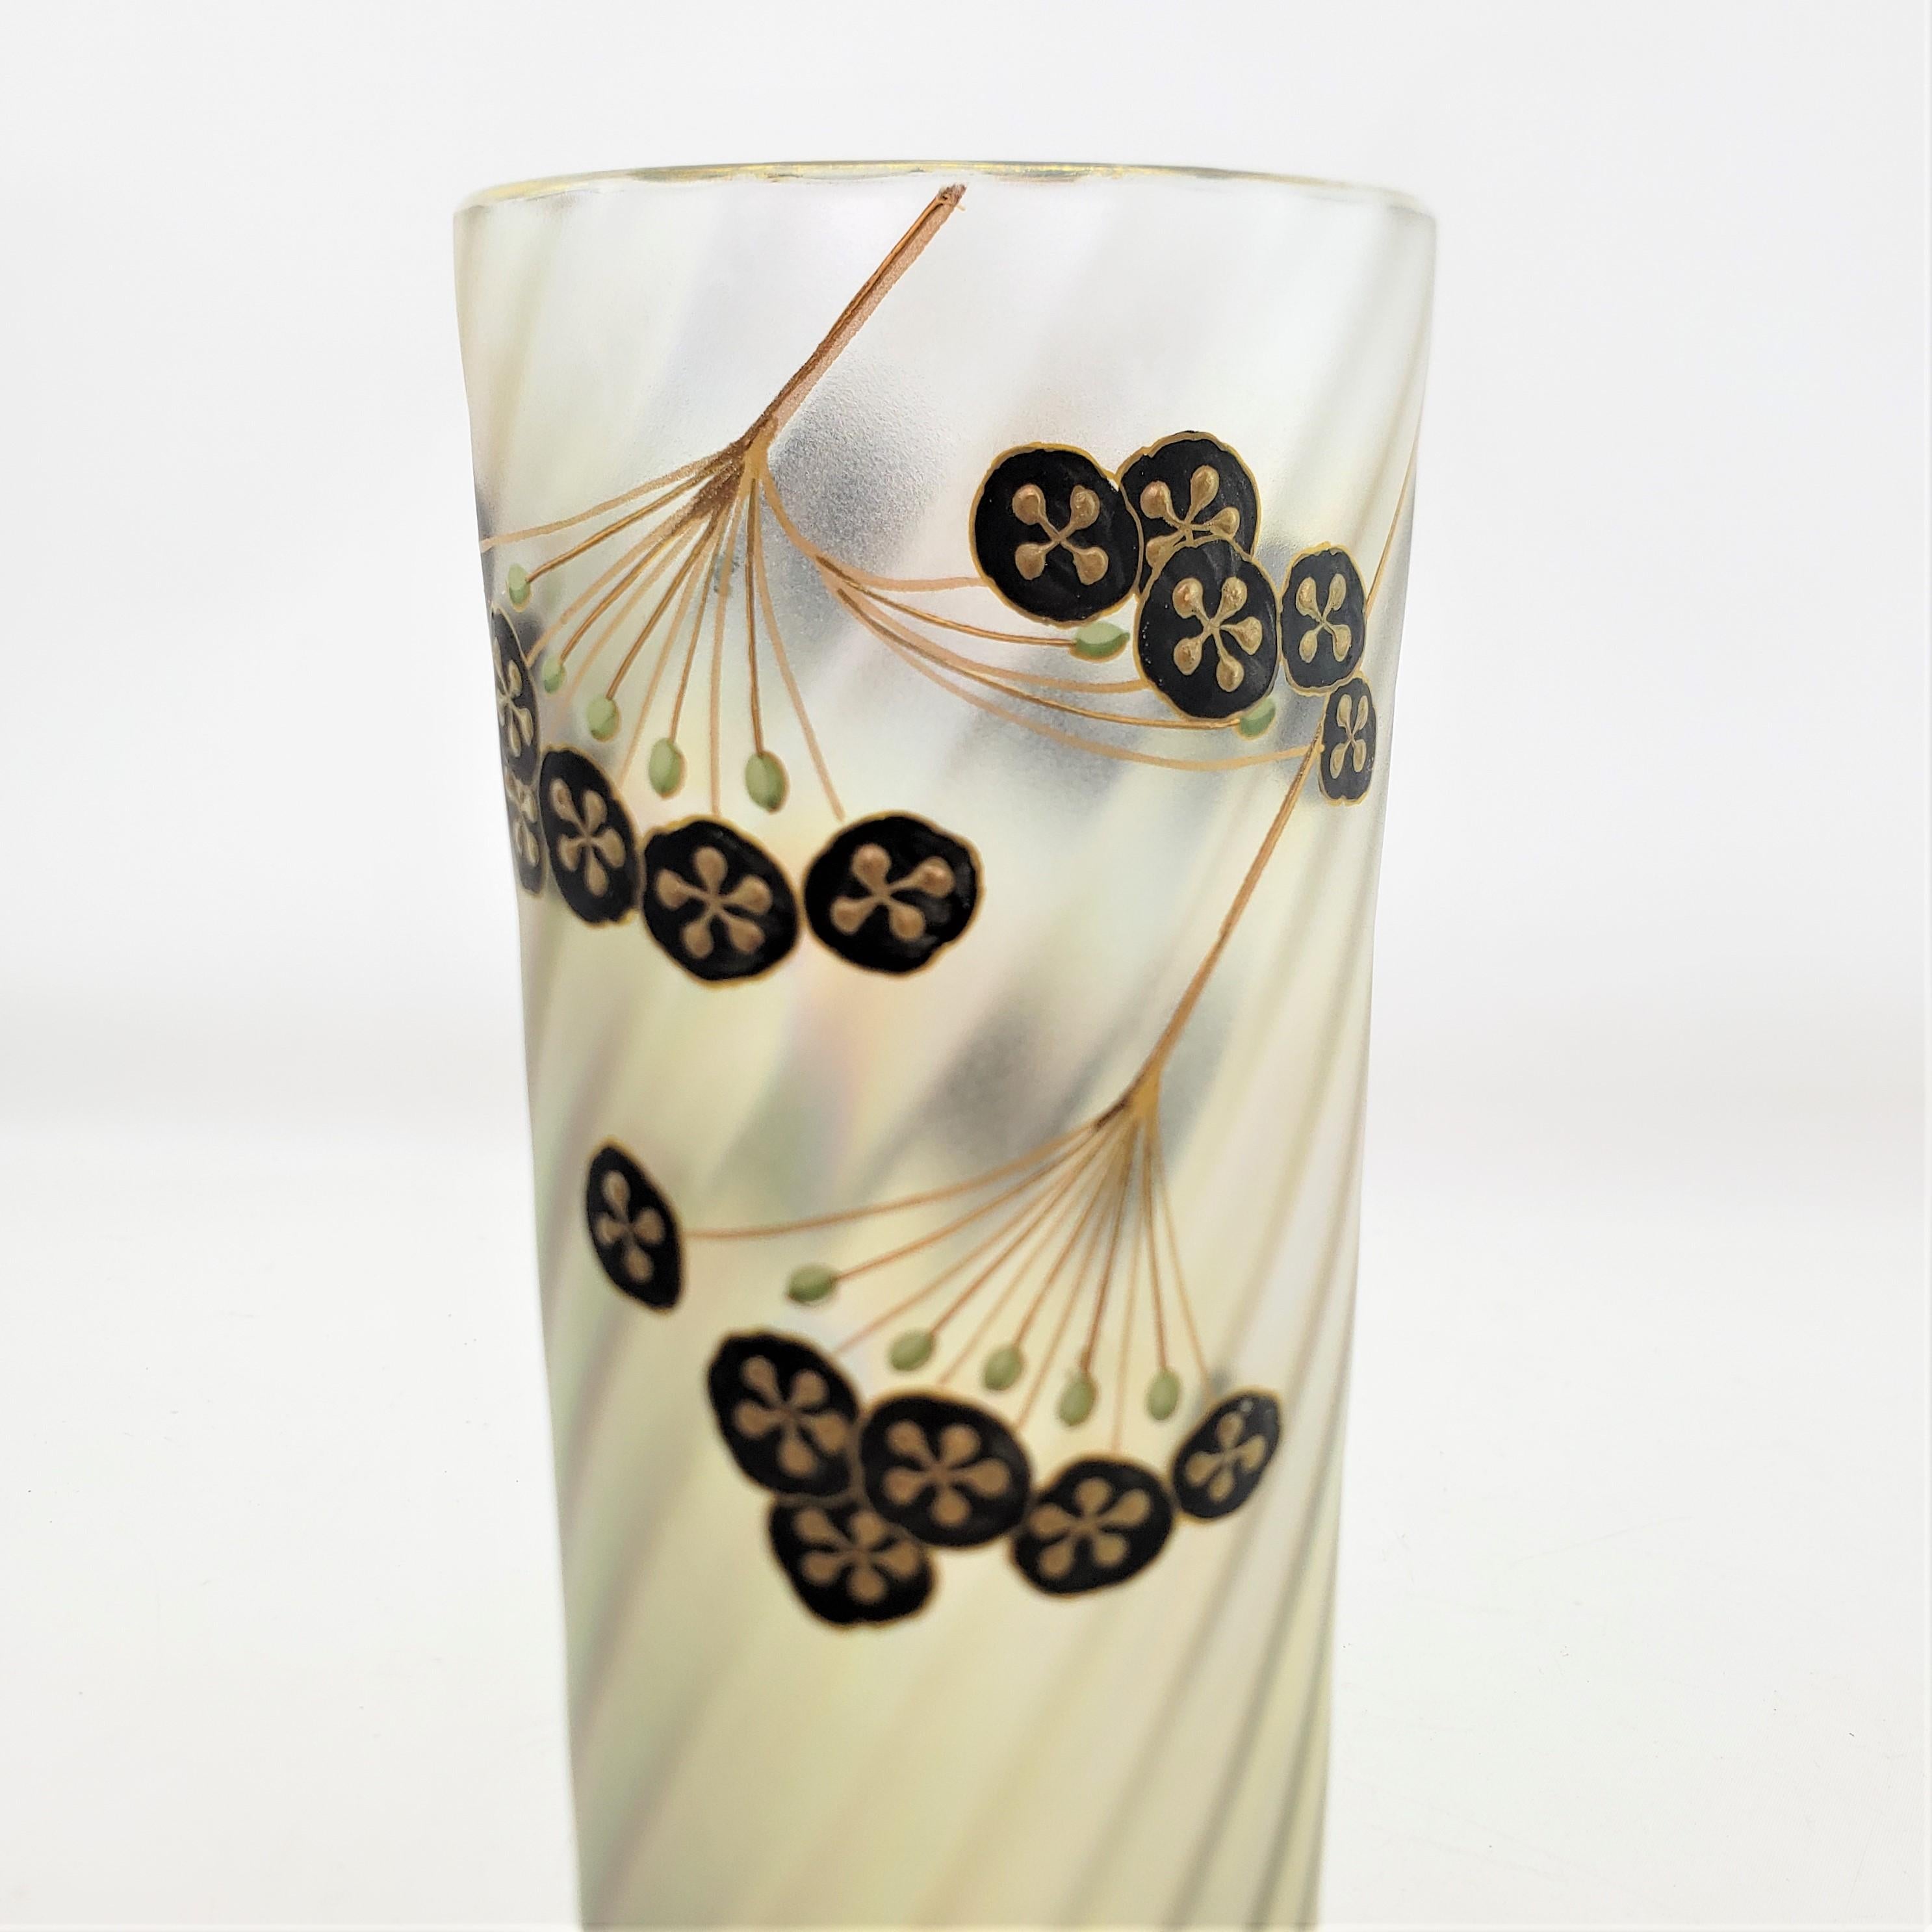 Antique Art Nouveau Iridescent Art Glass Vase with Enamel Floral Decoration For Sale 5